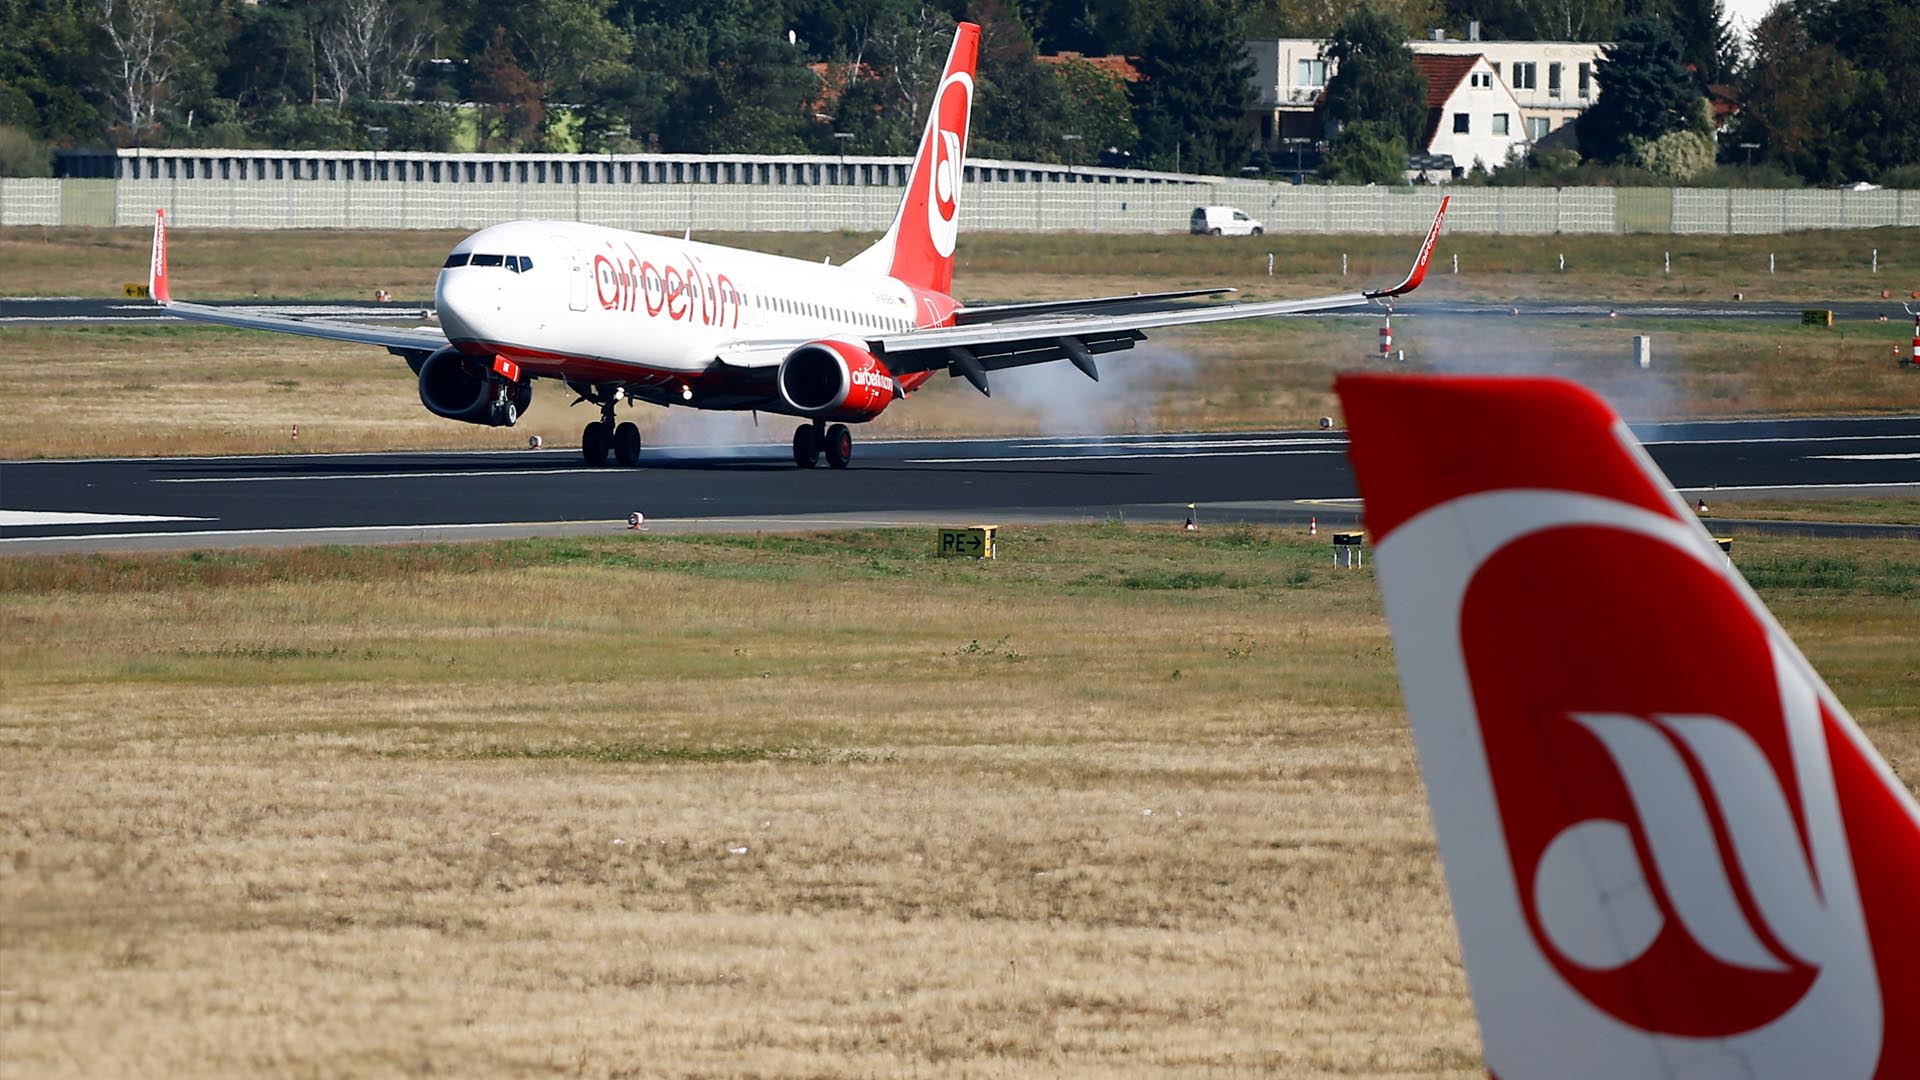 La aerolínea alemana informó que esta negociando colocar a varios empleados en dos compañías para evitar los despidos anunciados